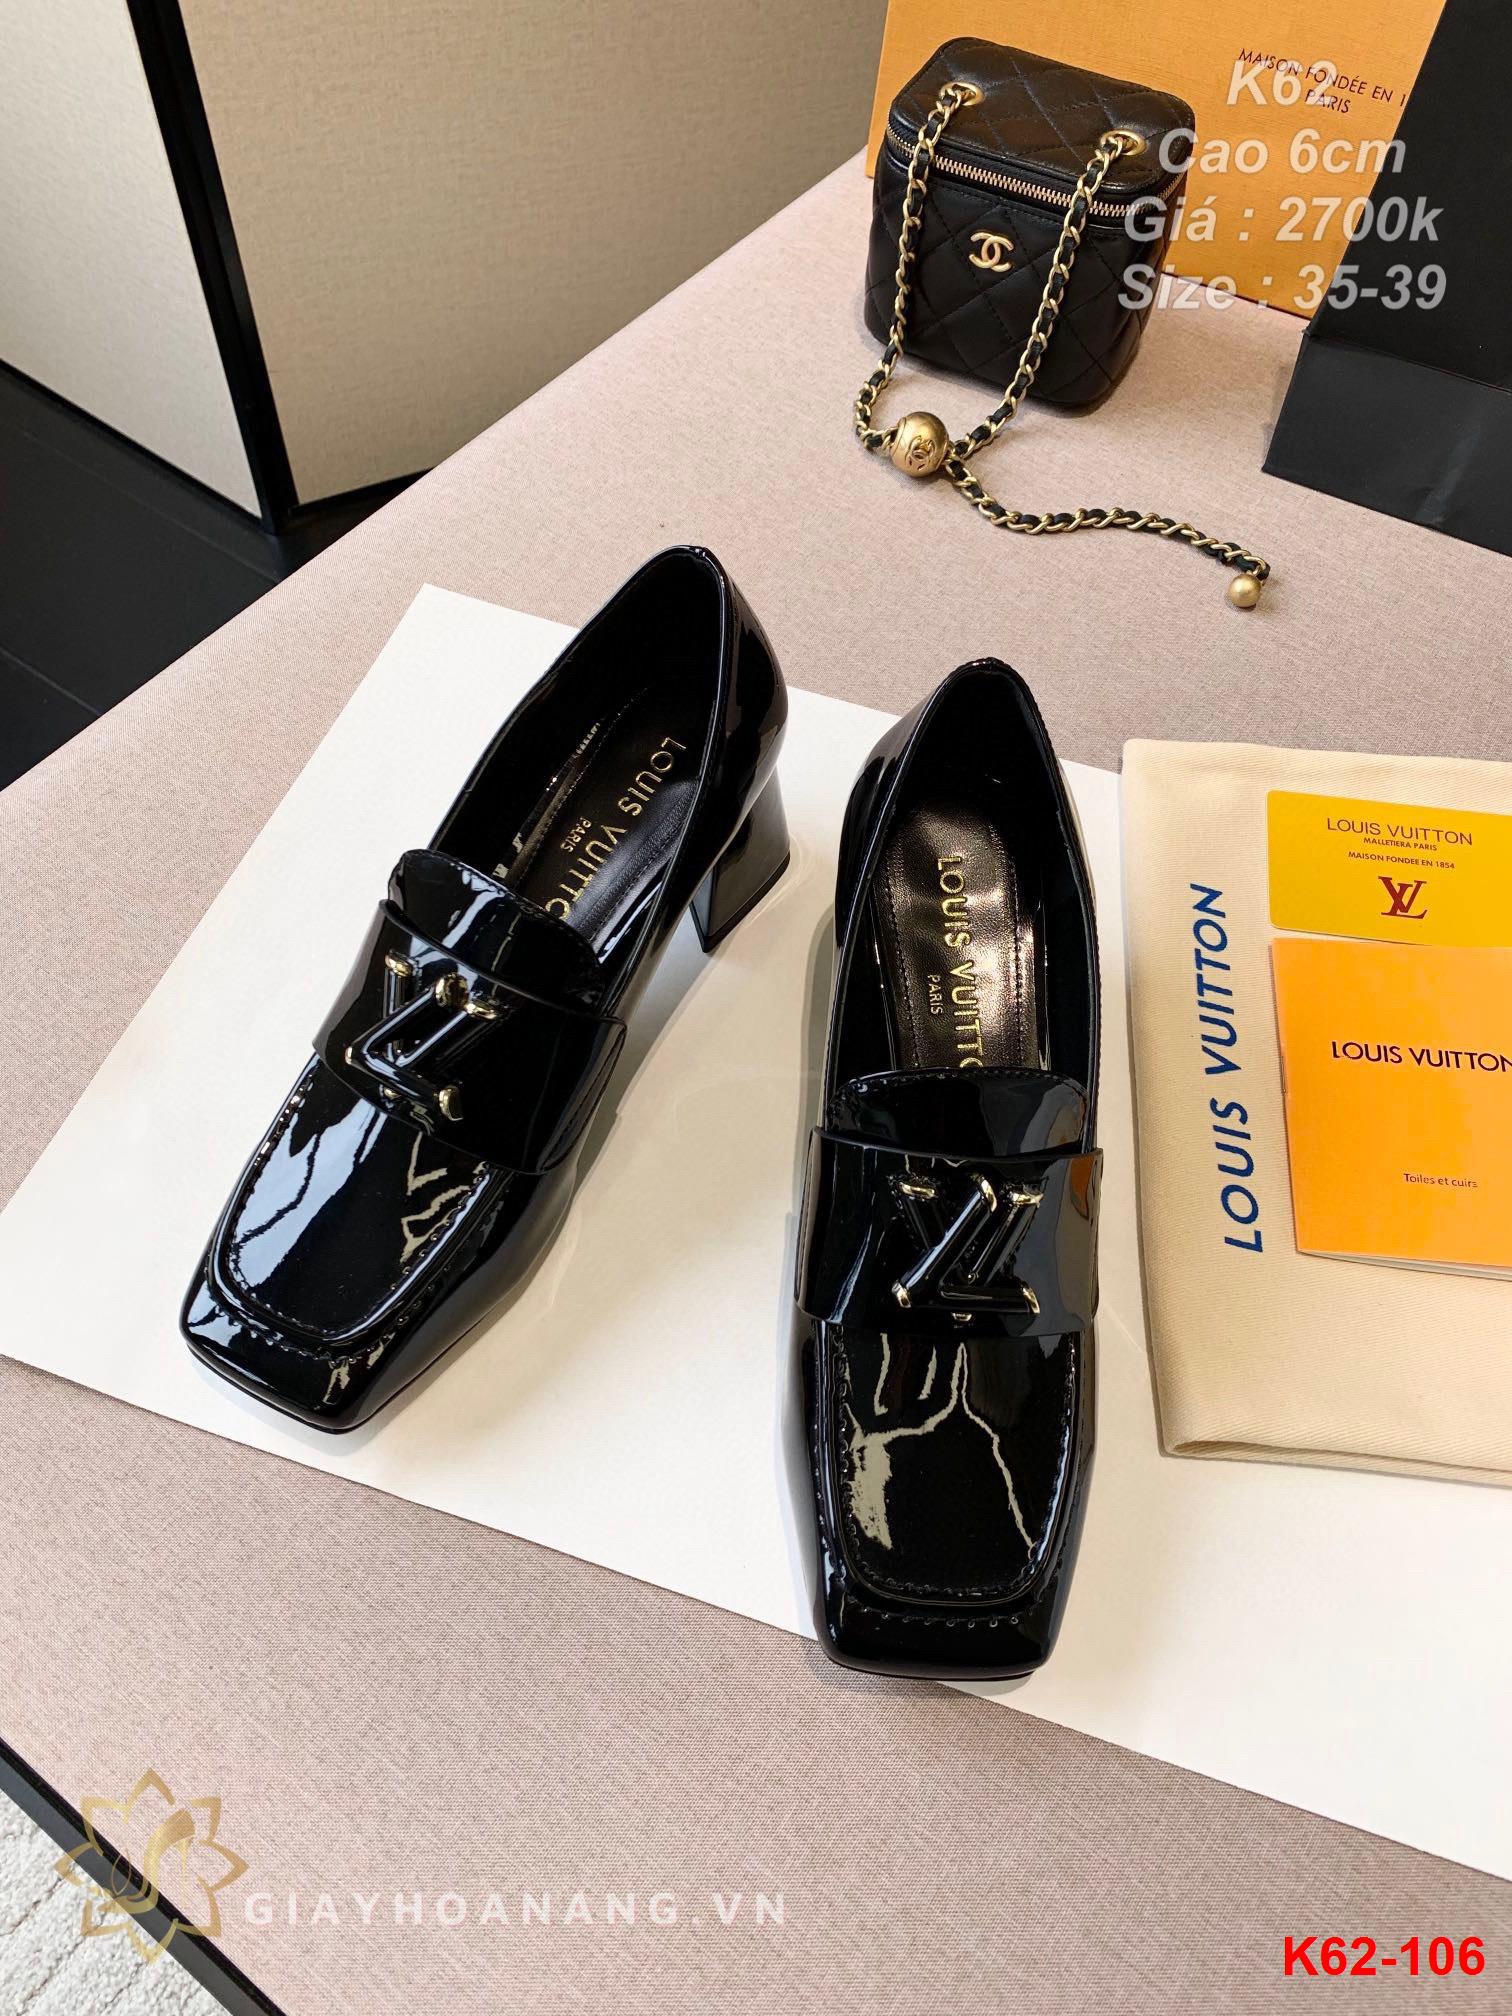 K62-106 Louis Vuitton giày cao 6cm siêu cấp